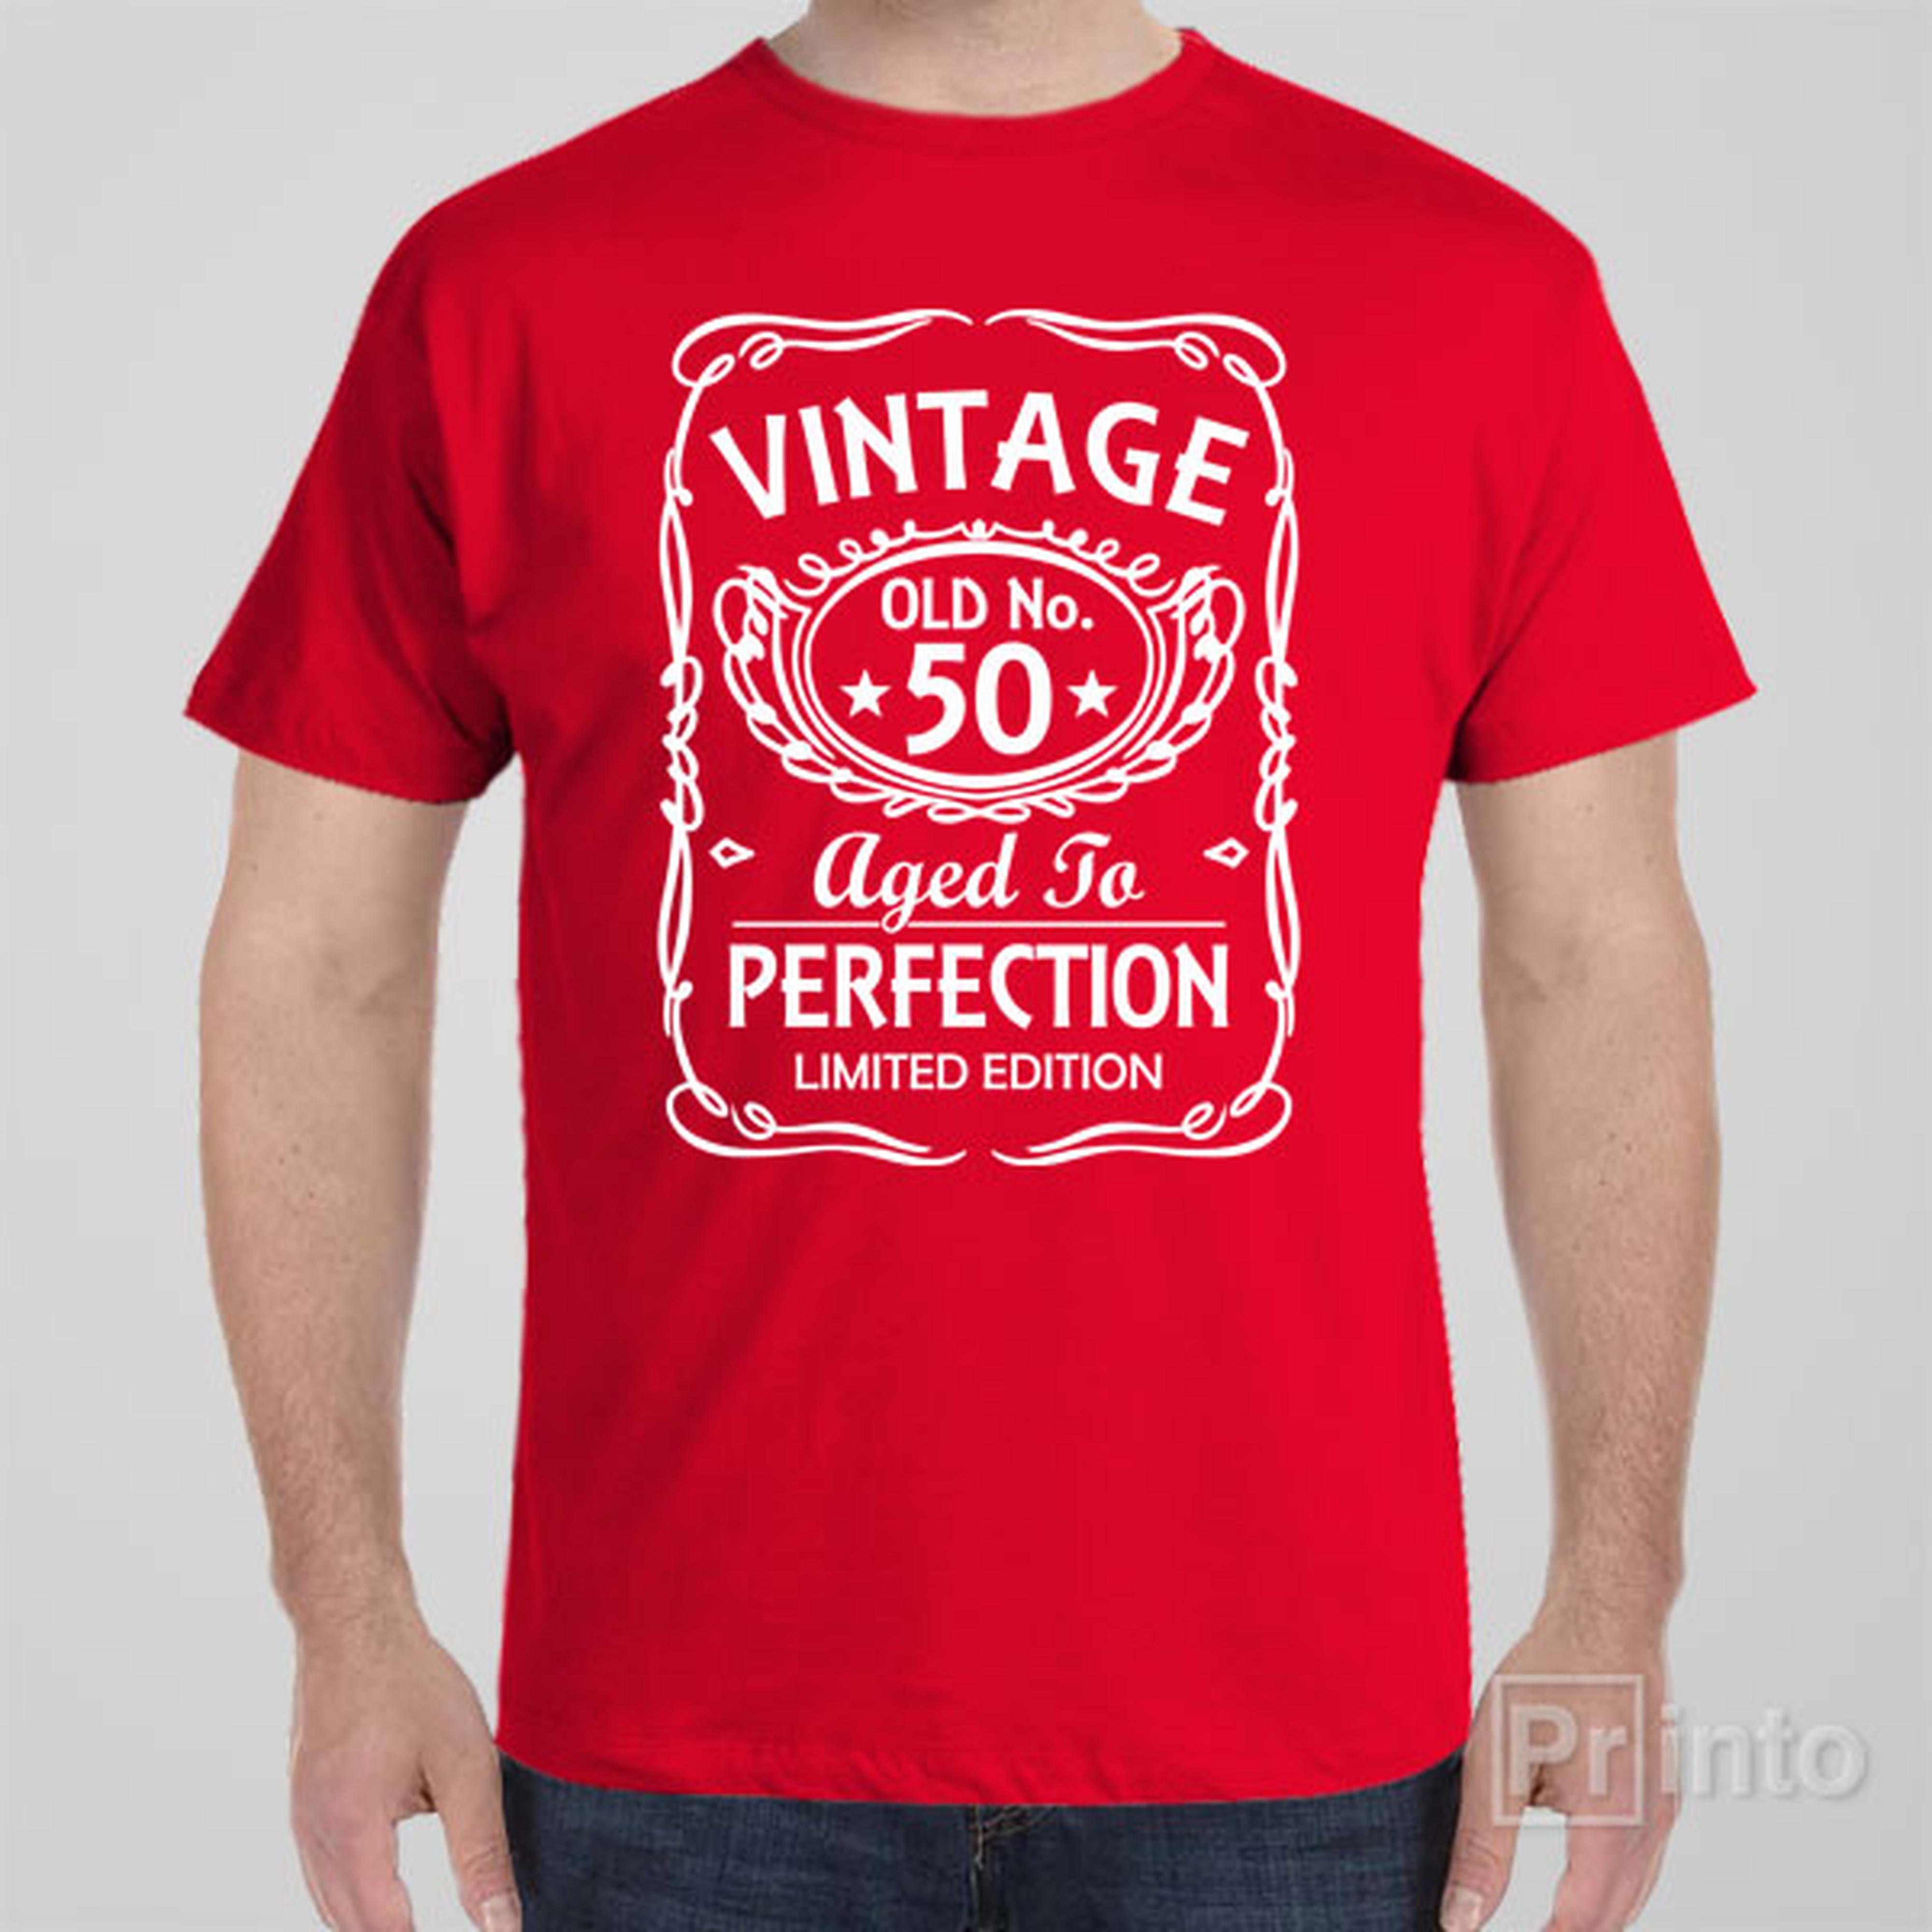 vintage-old-no-50-t-shirt